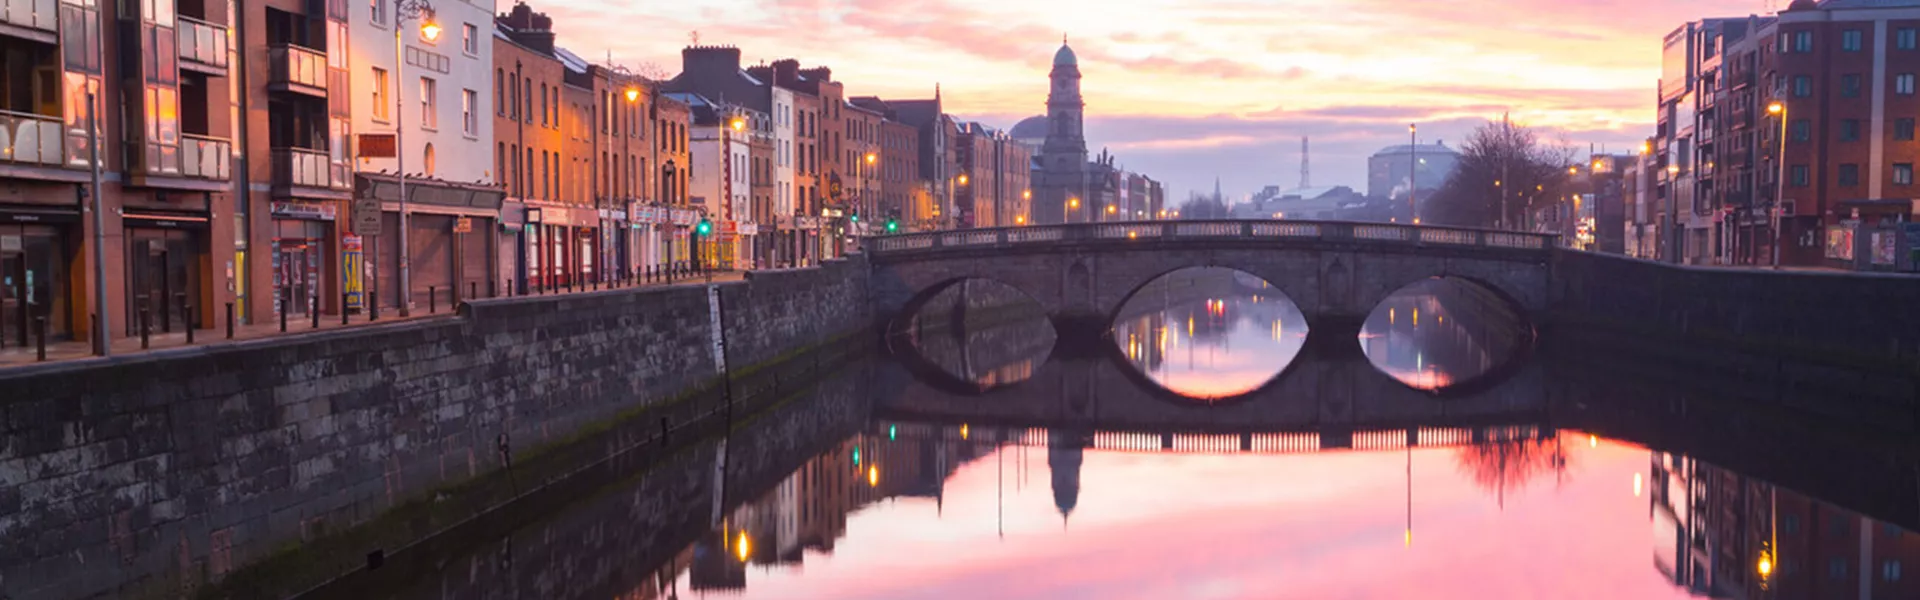 Dublin bridge in Ireland